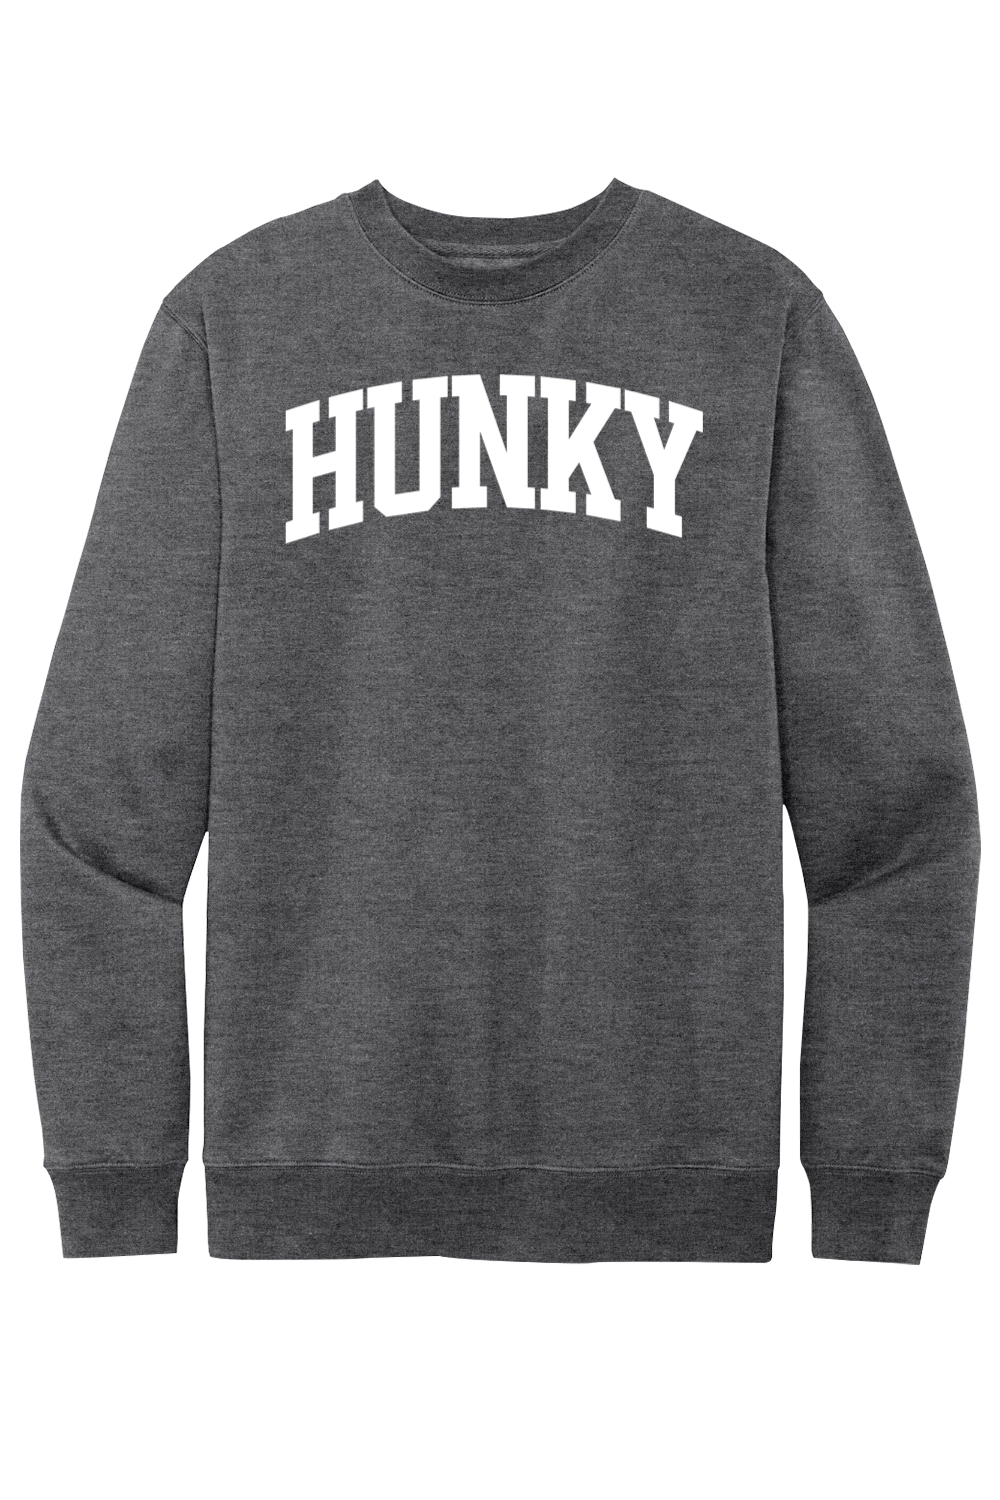 Hunky Collegiate - Fleece Crewneck Sweatshirt - Yinzylvania